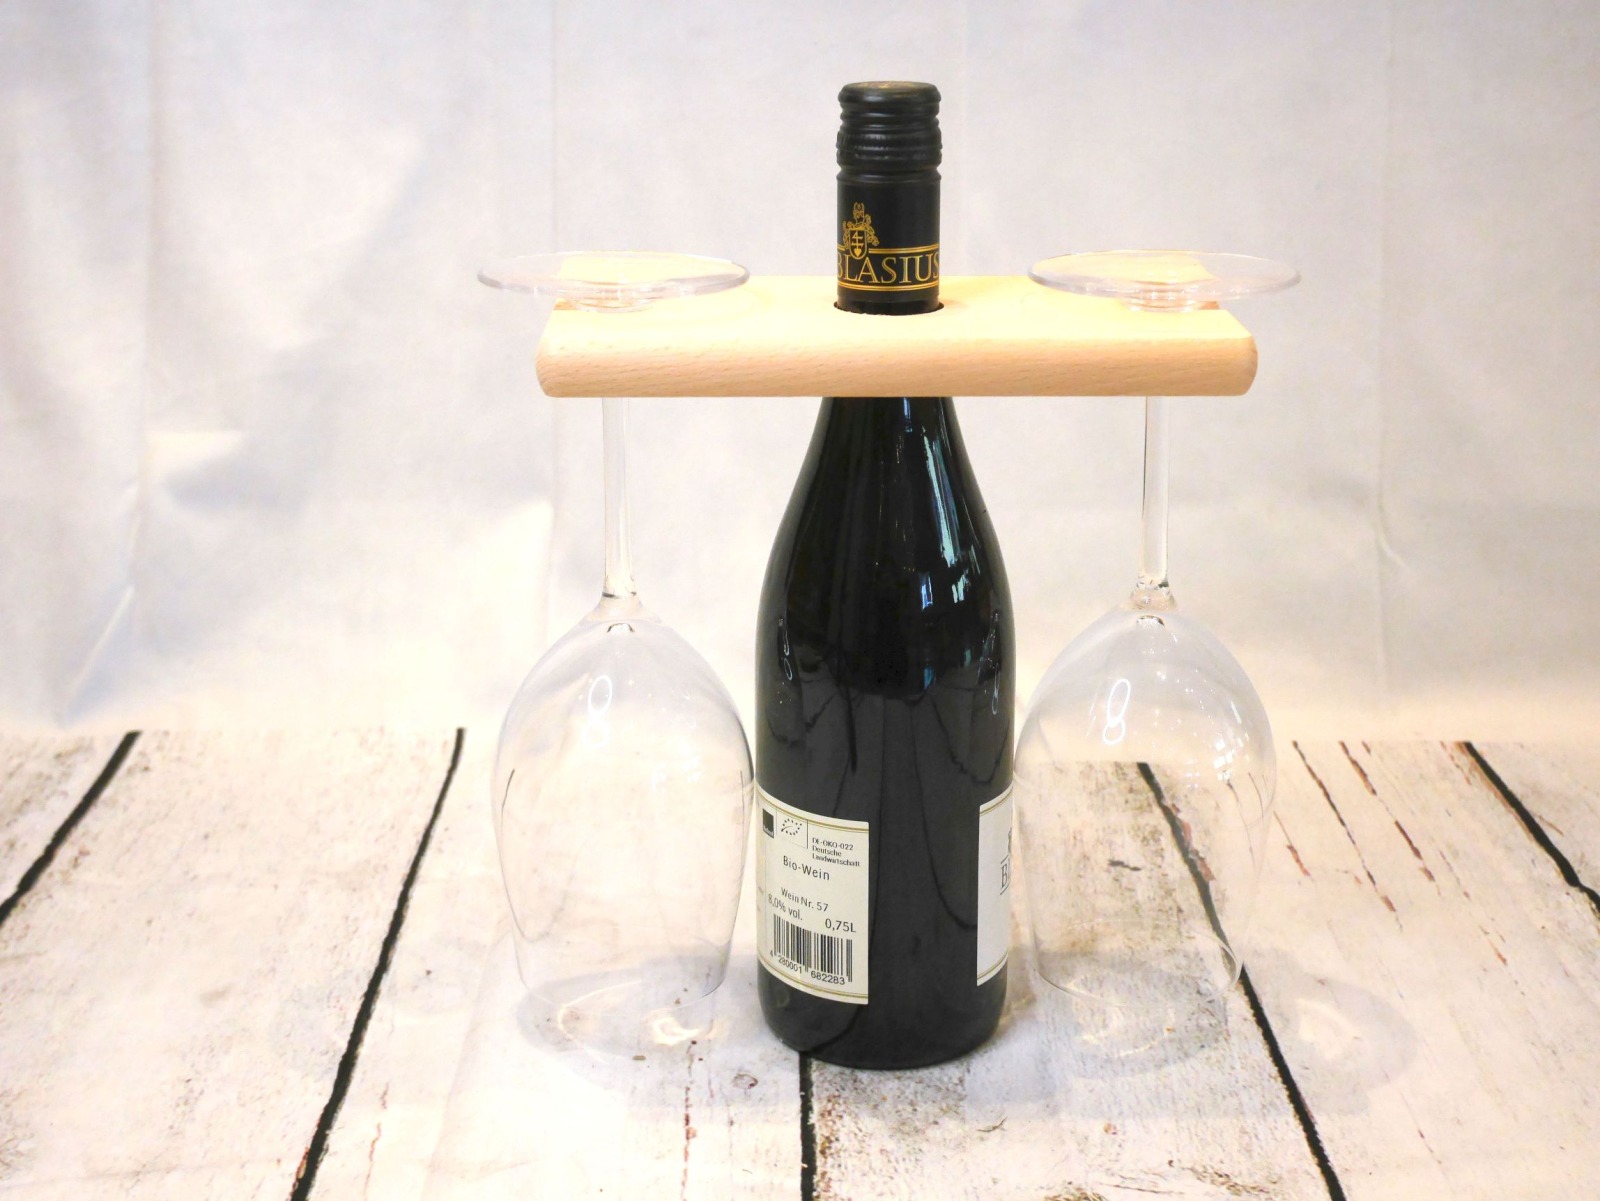 Weinglashalter aus Holz mit Flaschen-Halterung für 2 Gläser und eine Weinflasche 2